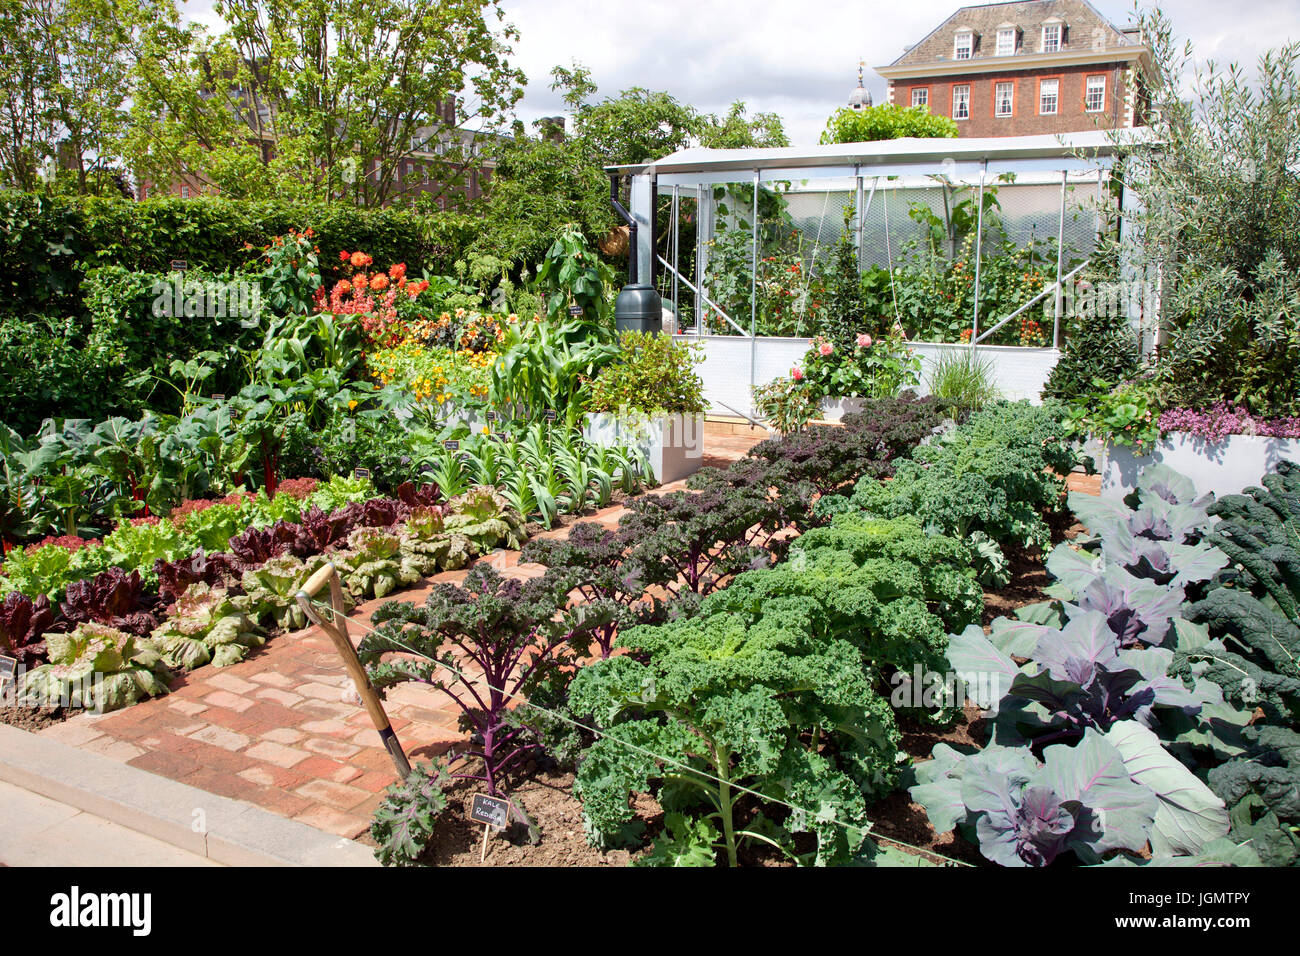 Chris Evans Geschmack Garten, ein BBC Radio 2 fühlen gut, entworfen von Jon Wheatley für Chelsea Flower Show 2017 Stockfoto